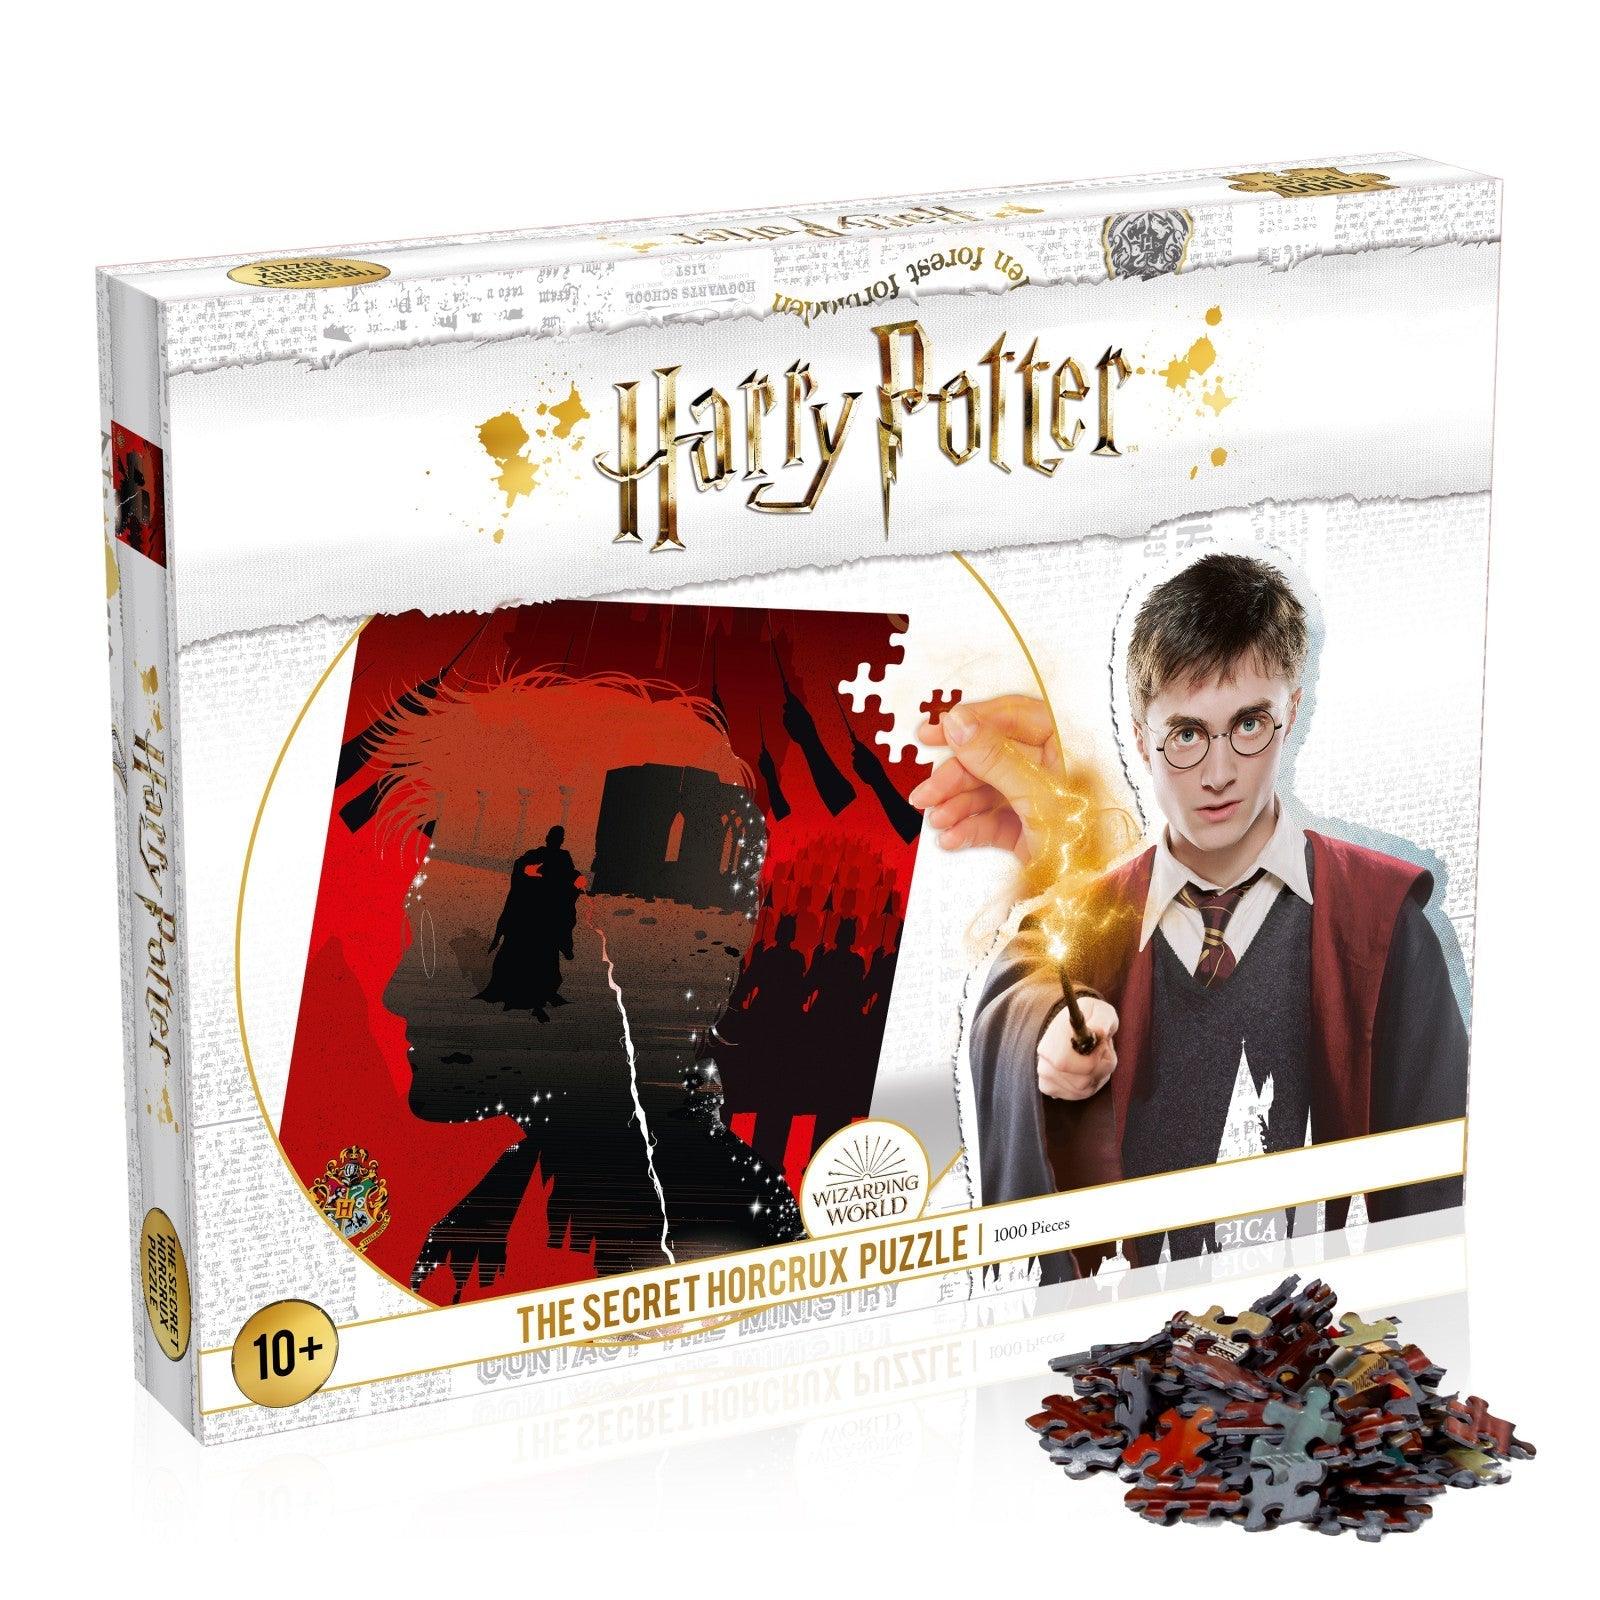 VR-82608 Harry Potter the Secret Horcrux Puzzle 1,000 pieces - Winning Moves - Titan Pop Culture